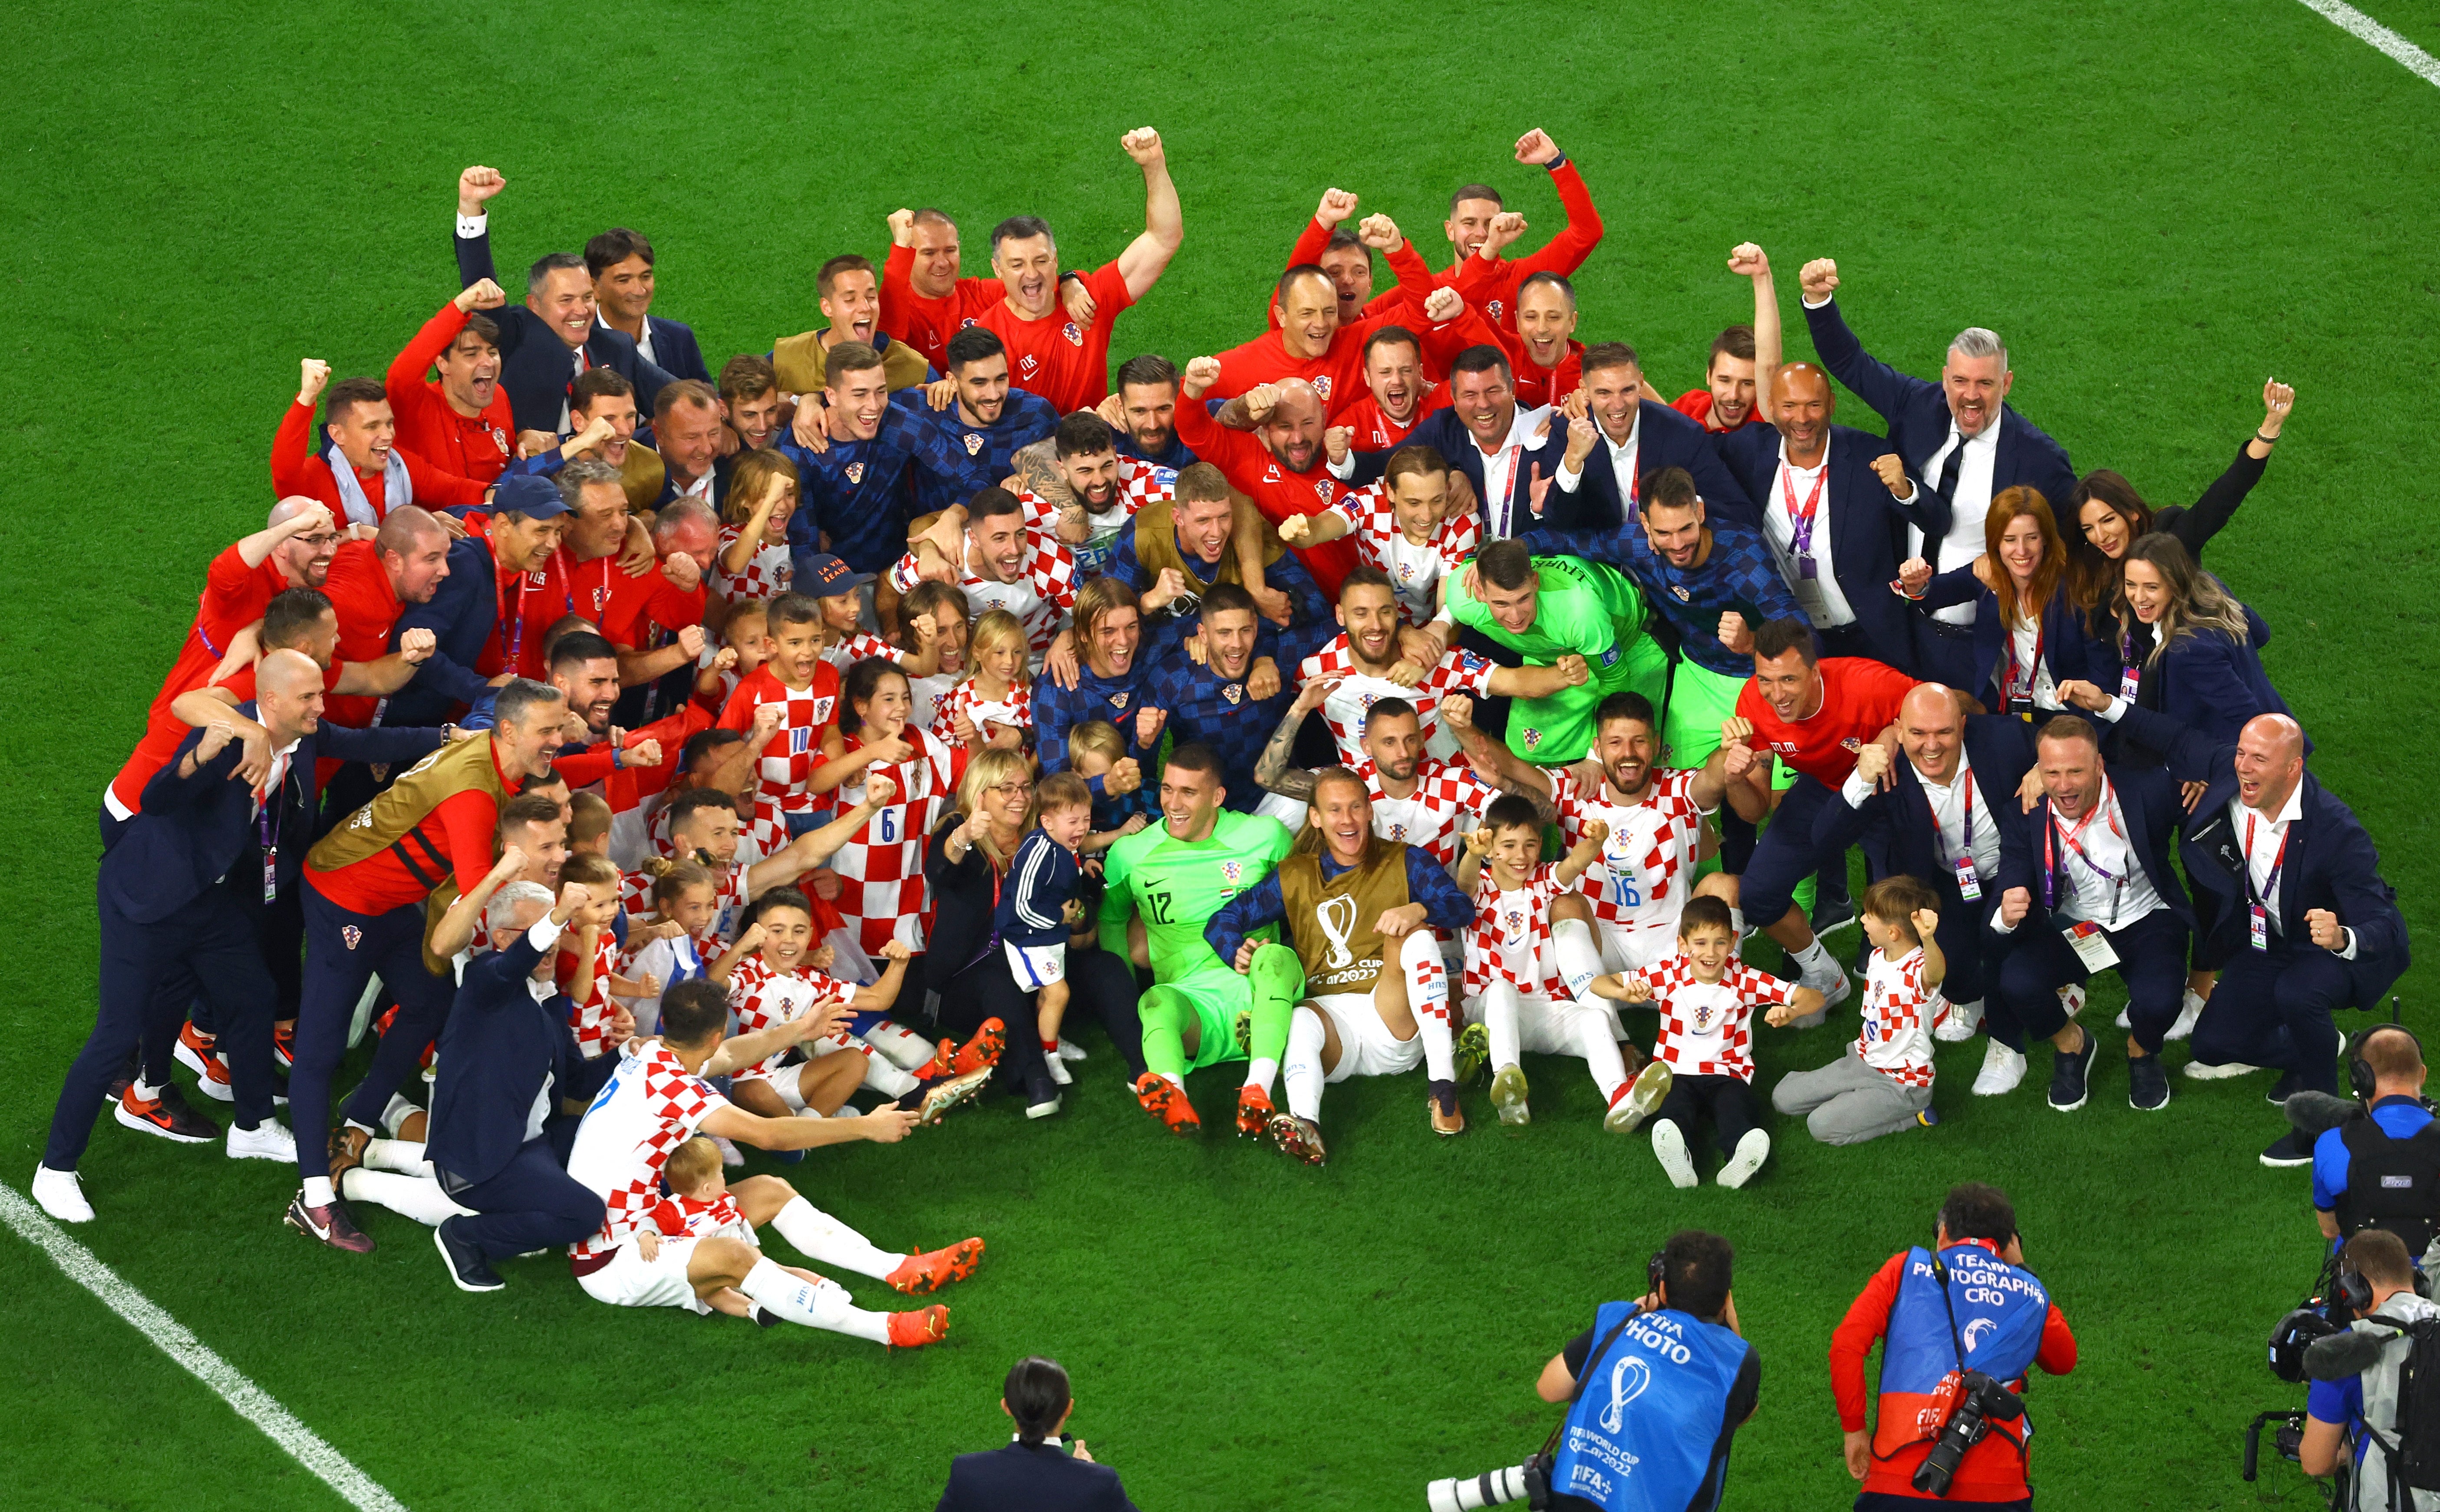 Croatia celebrated a famous win